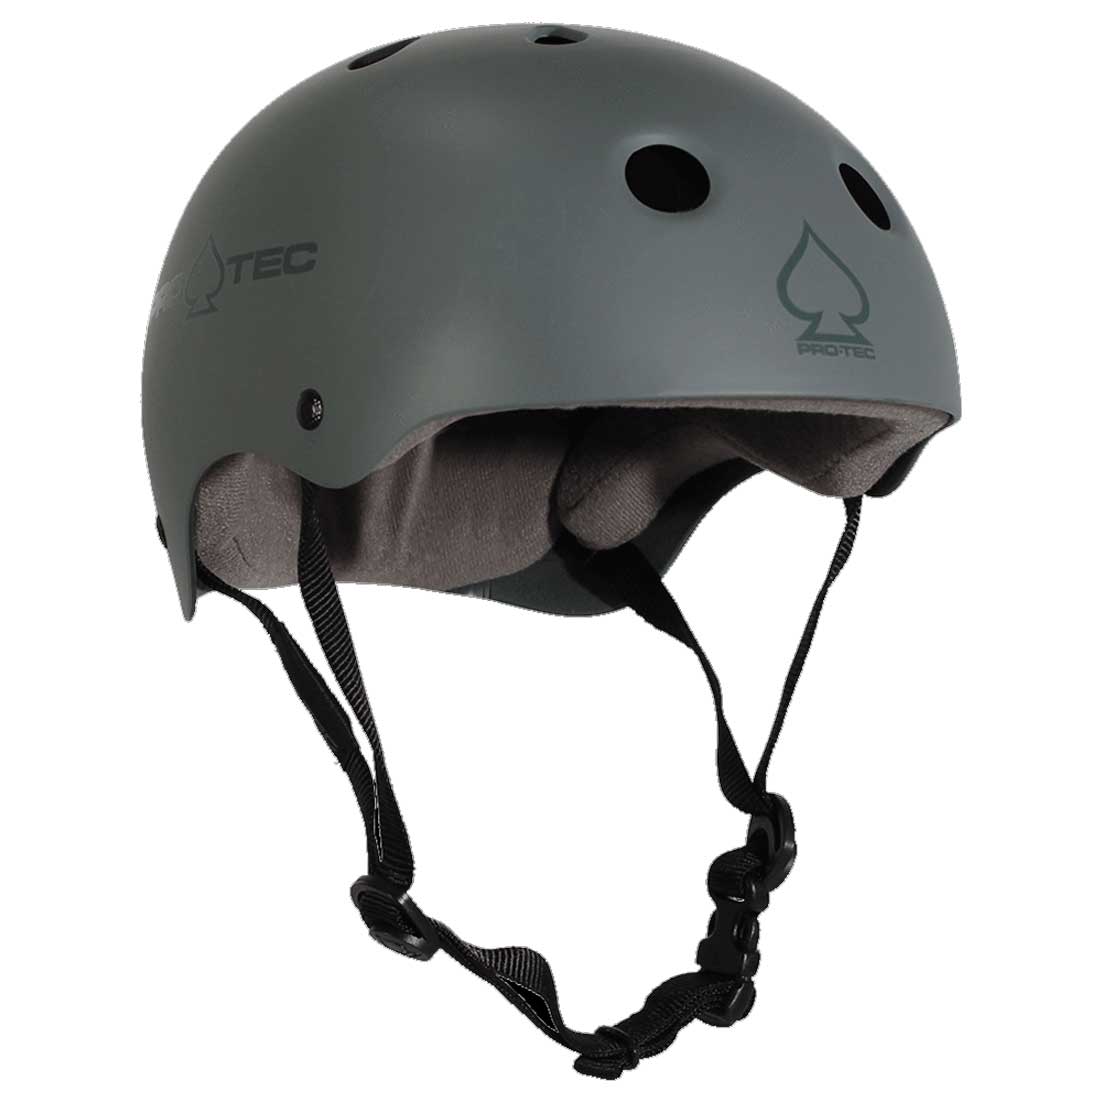 送料無料人気のスケート用ヘルメット PRO-TEC CLASSIC SKATE MATTE GREY メンズ スポーツ 当店在庫してます ジュニア 超爆安 自転車 ヘルメット レディース